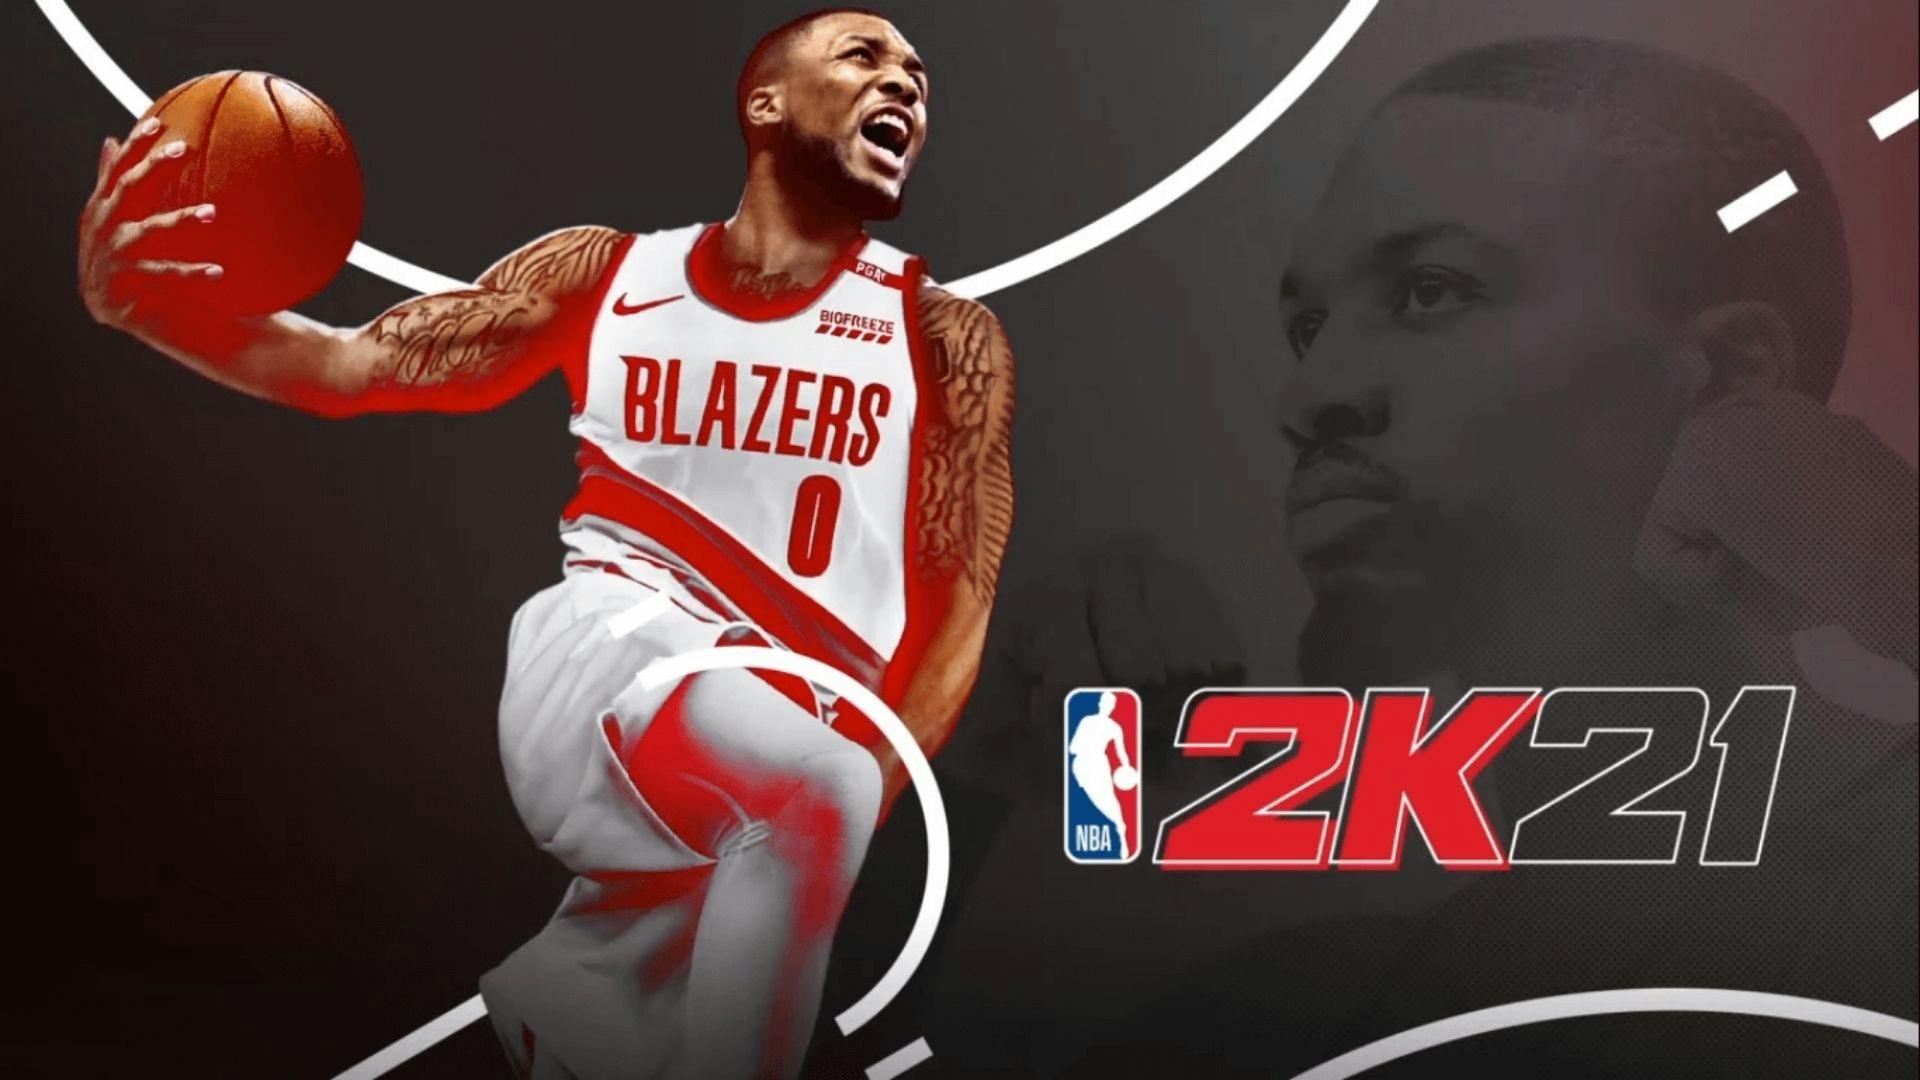 NBA 2k21 logo